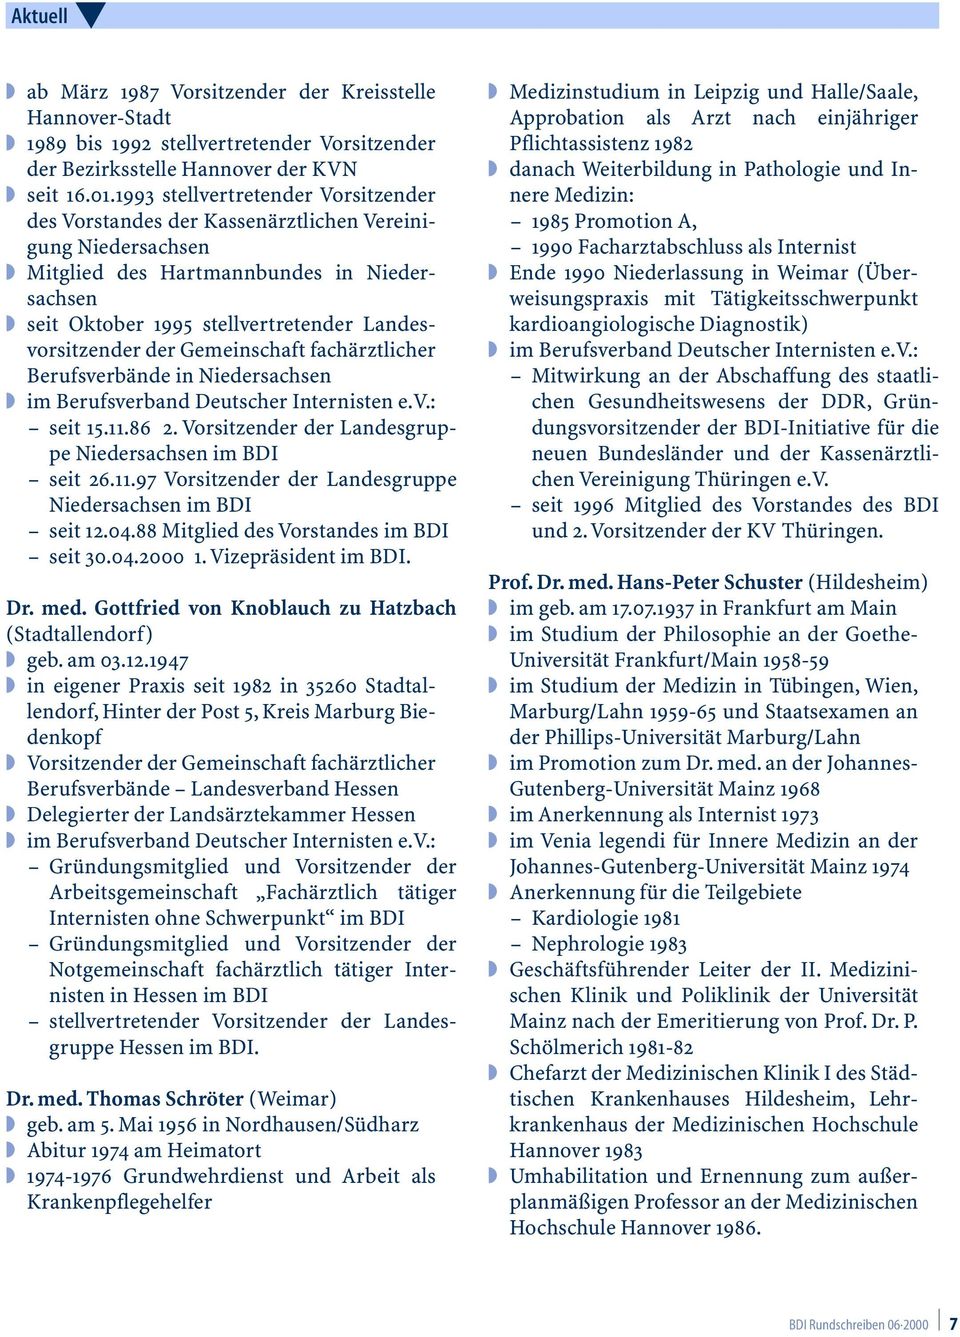 der Gemeinschaft fachärztlicher Berufsverbände in Niedersachsen seit 15.11.86 2. Vorsitzender der Landesgruppe Niedersachsen im BDI seit 26.11.97 Vorsitzender der Landesgruppe Niedersachsen im BDI seit 12.